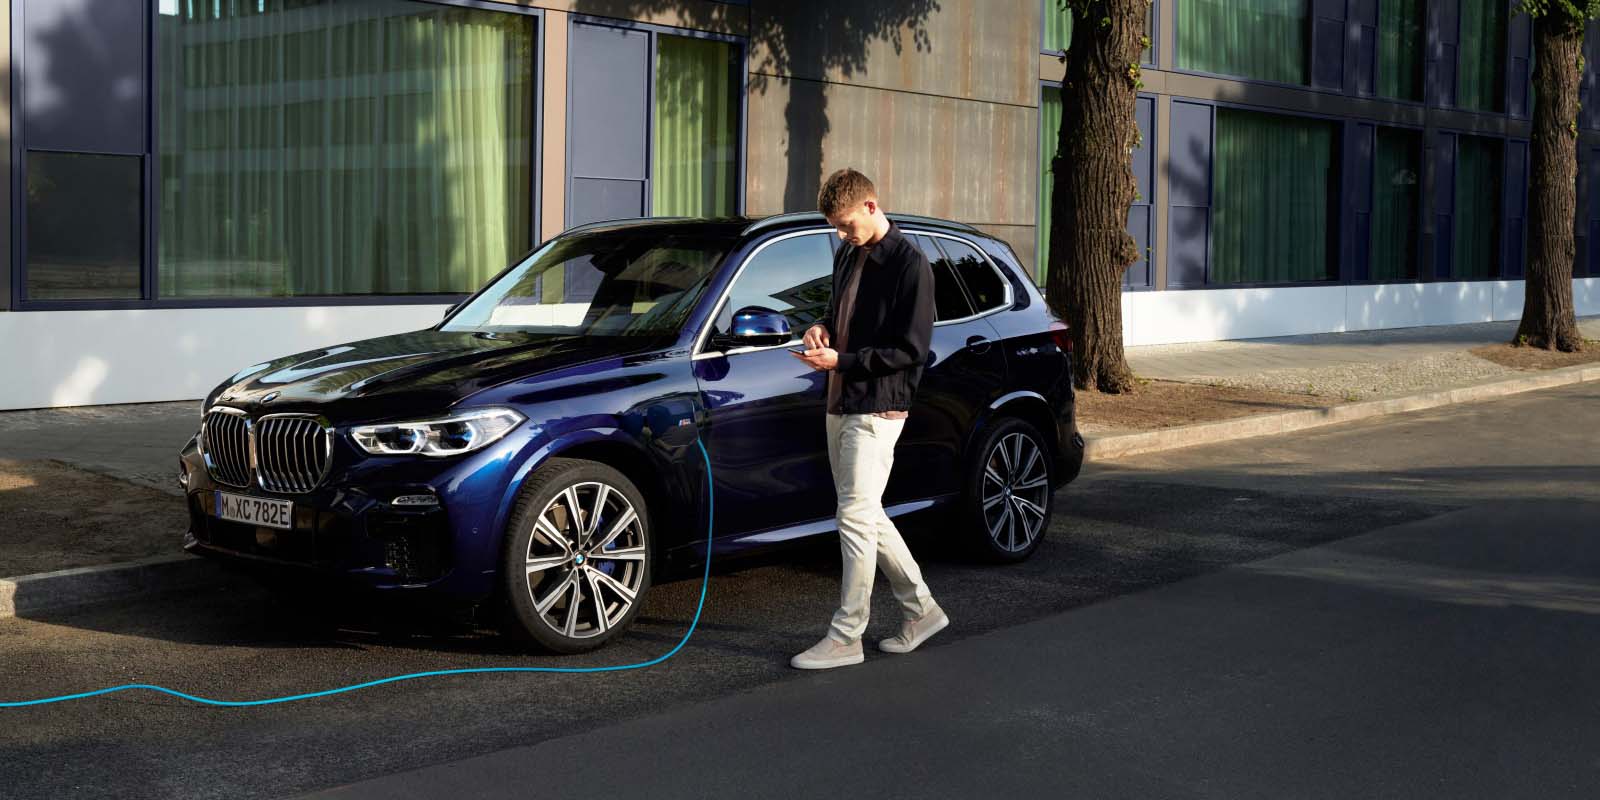 Ειδήσεις σε πραγματικό χρόνο με τη  νέα εφαρμογή BMW News